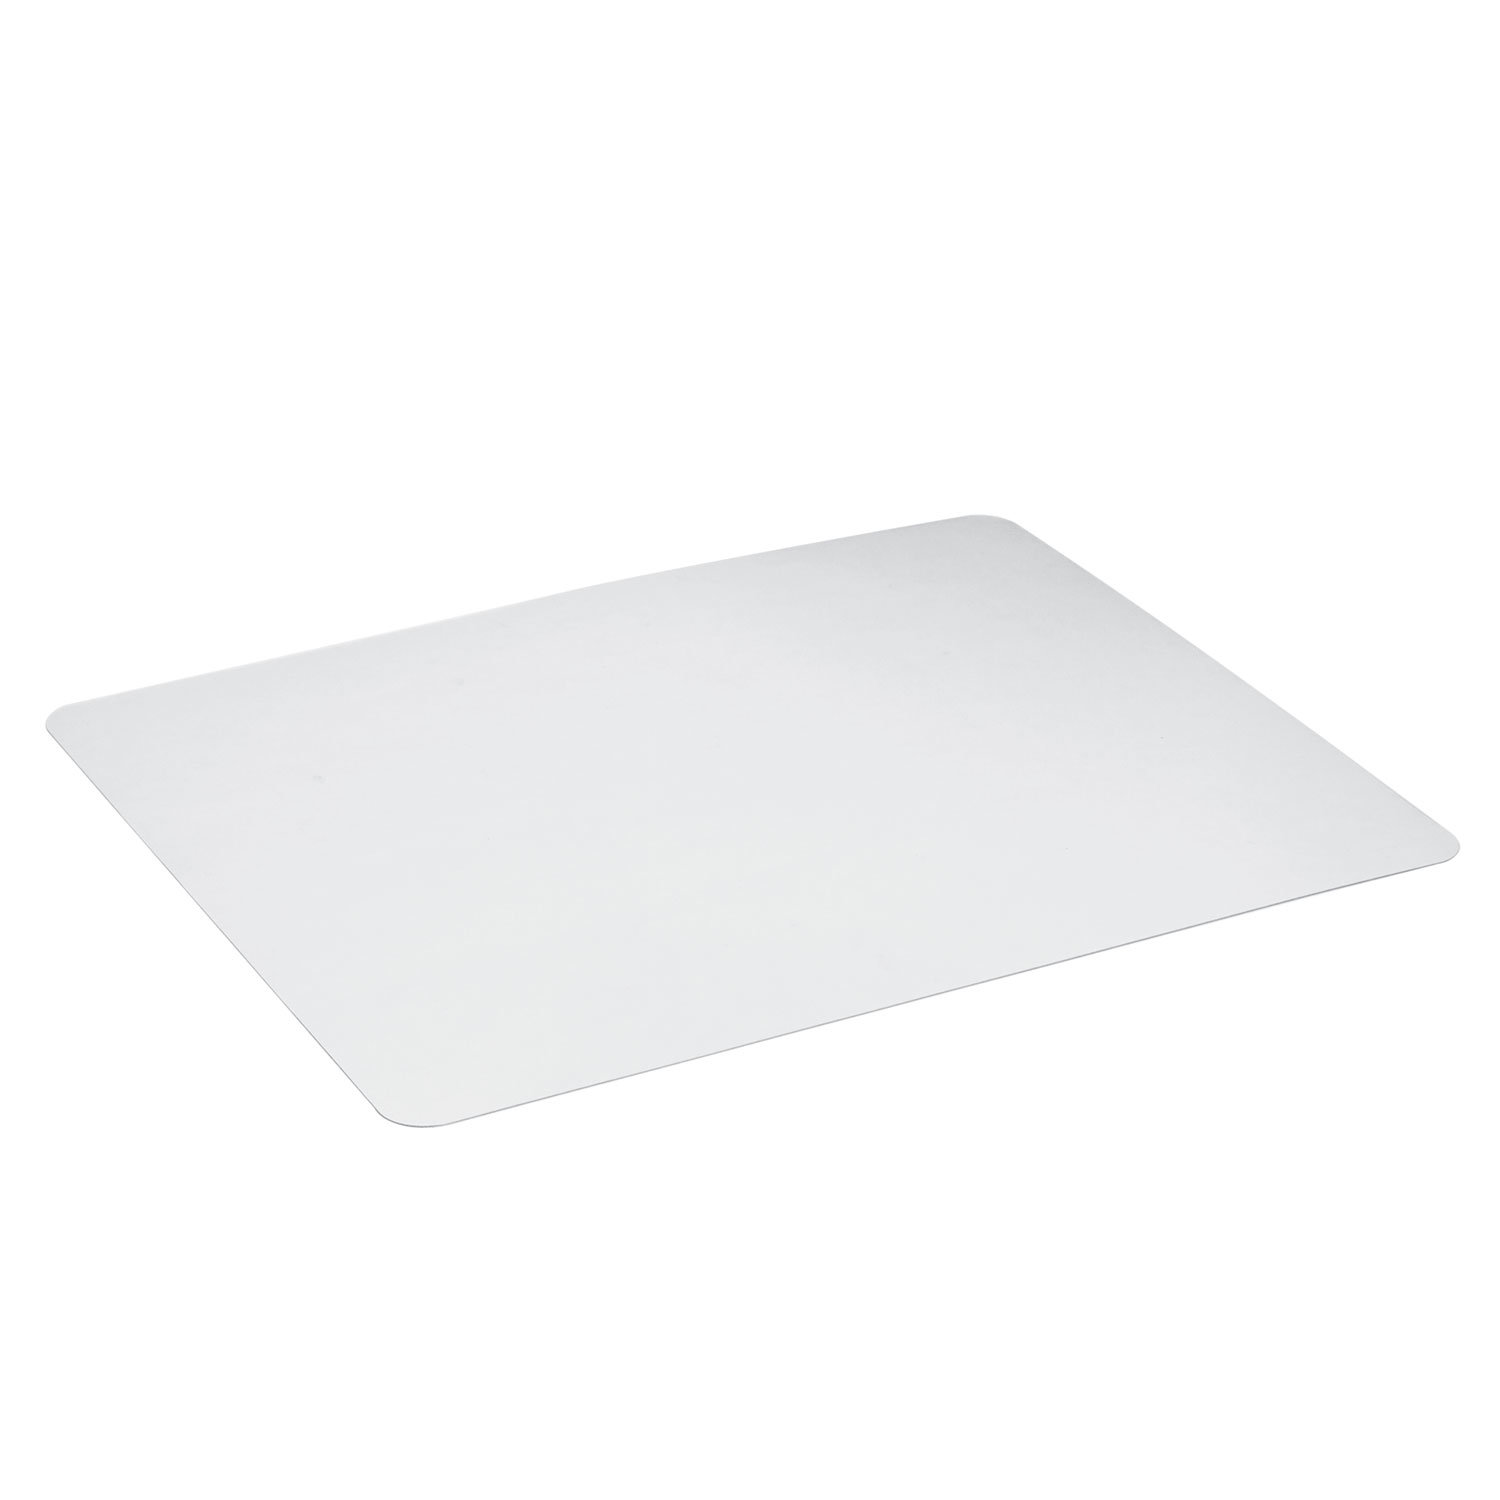 Покрытие STAFF Desk top для стола, 48х65 см, прозрачный (237089)